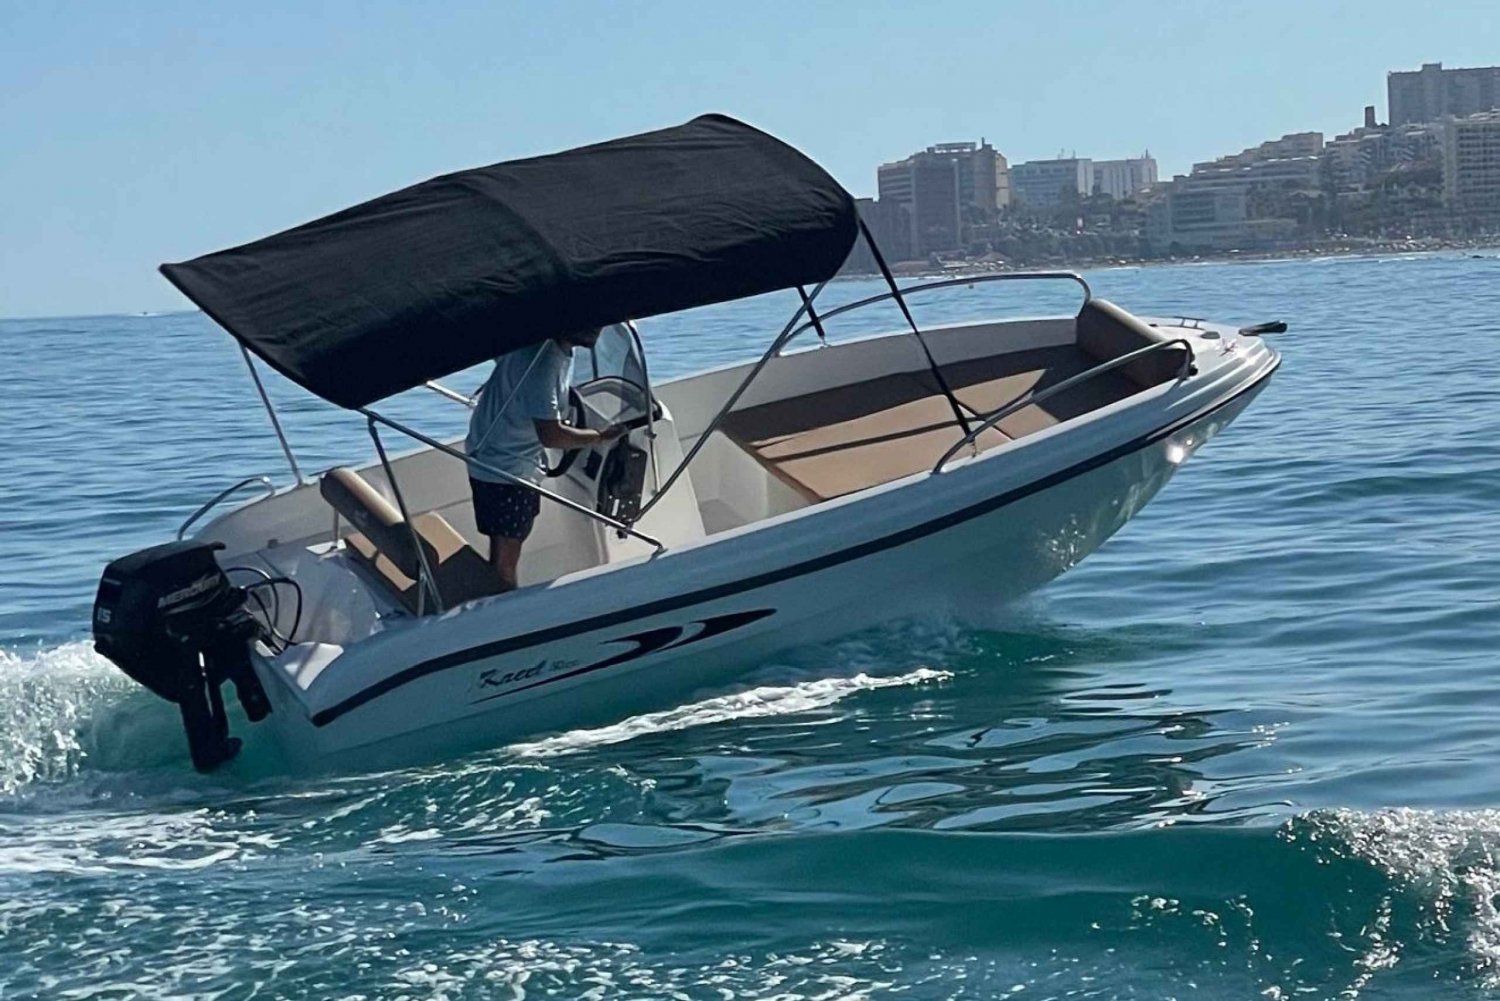 Malaga: Kaptajn på din egen båd uden licens